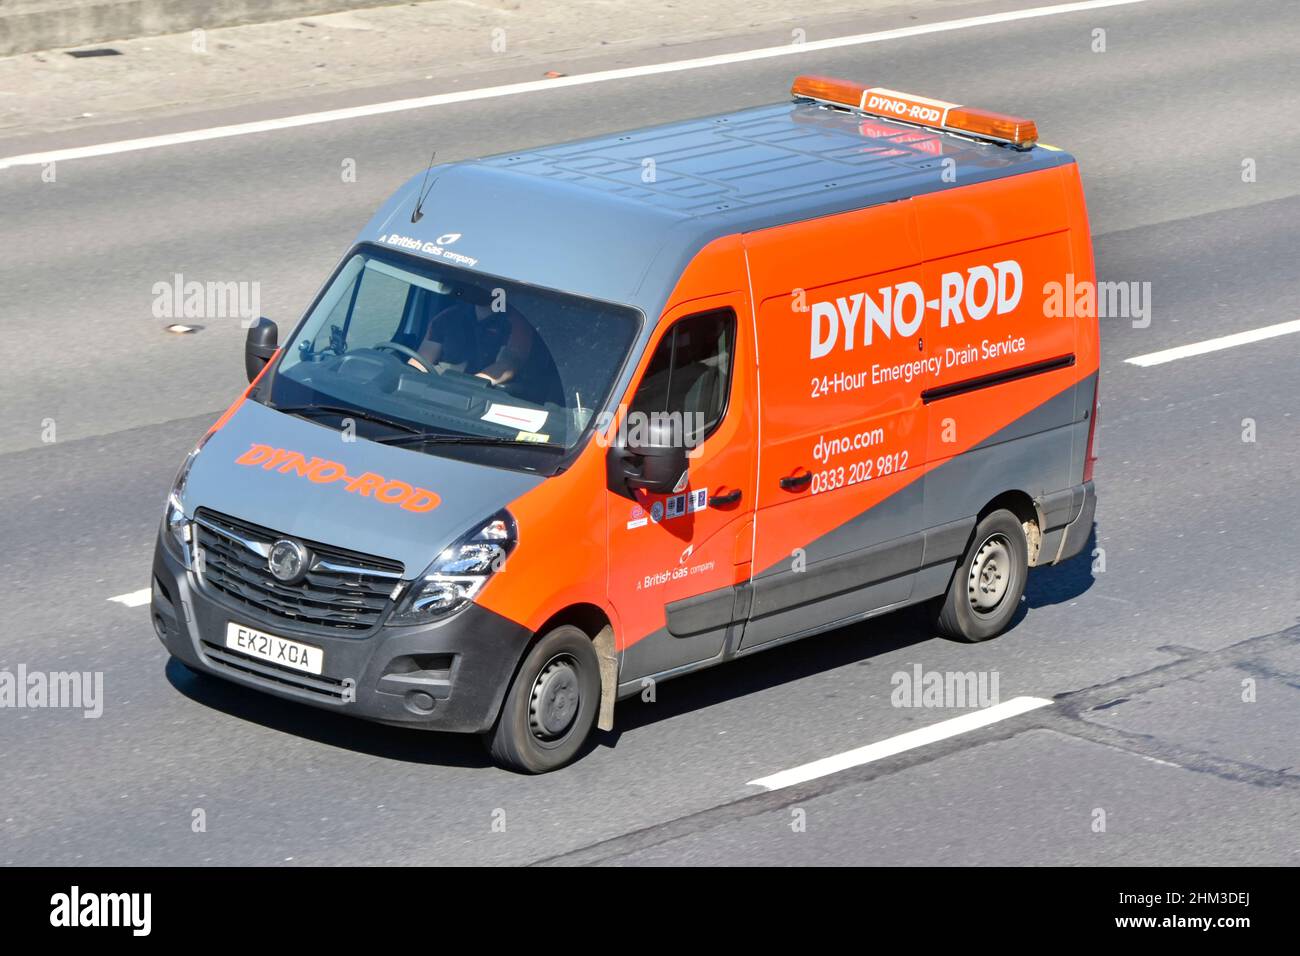 Seitenansicht von Dyno Rod van & driver ein britisches Gasunternehmen, das einen 24-Stunden-Notabfluss-Service bei Fahrzeugen auf der 0n uk Autobahn anwirbt Stockfoto